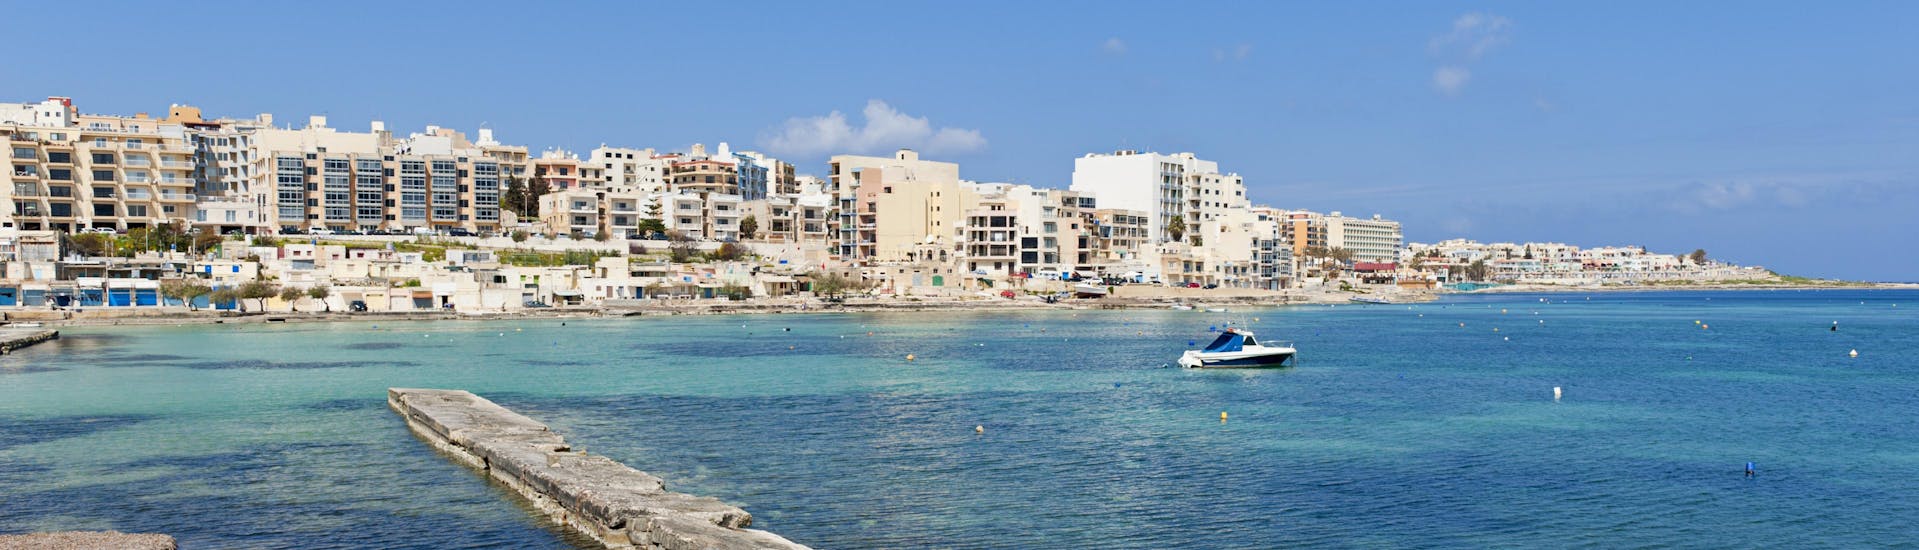 Un bateau près de la côte de Malte à Qawra.